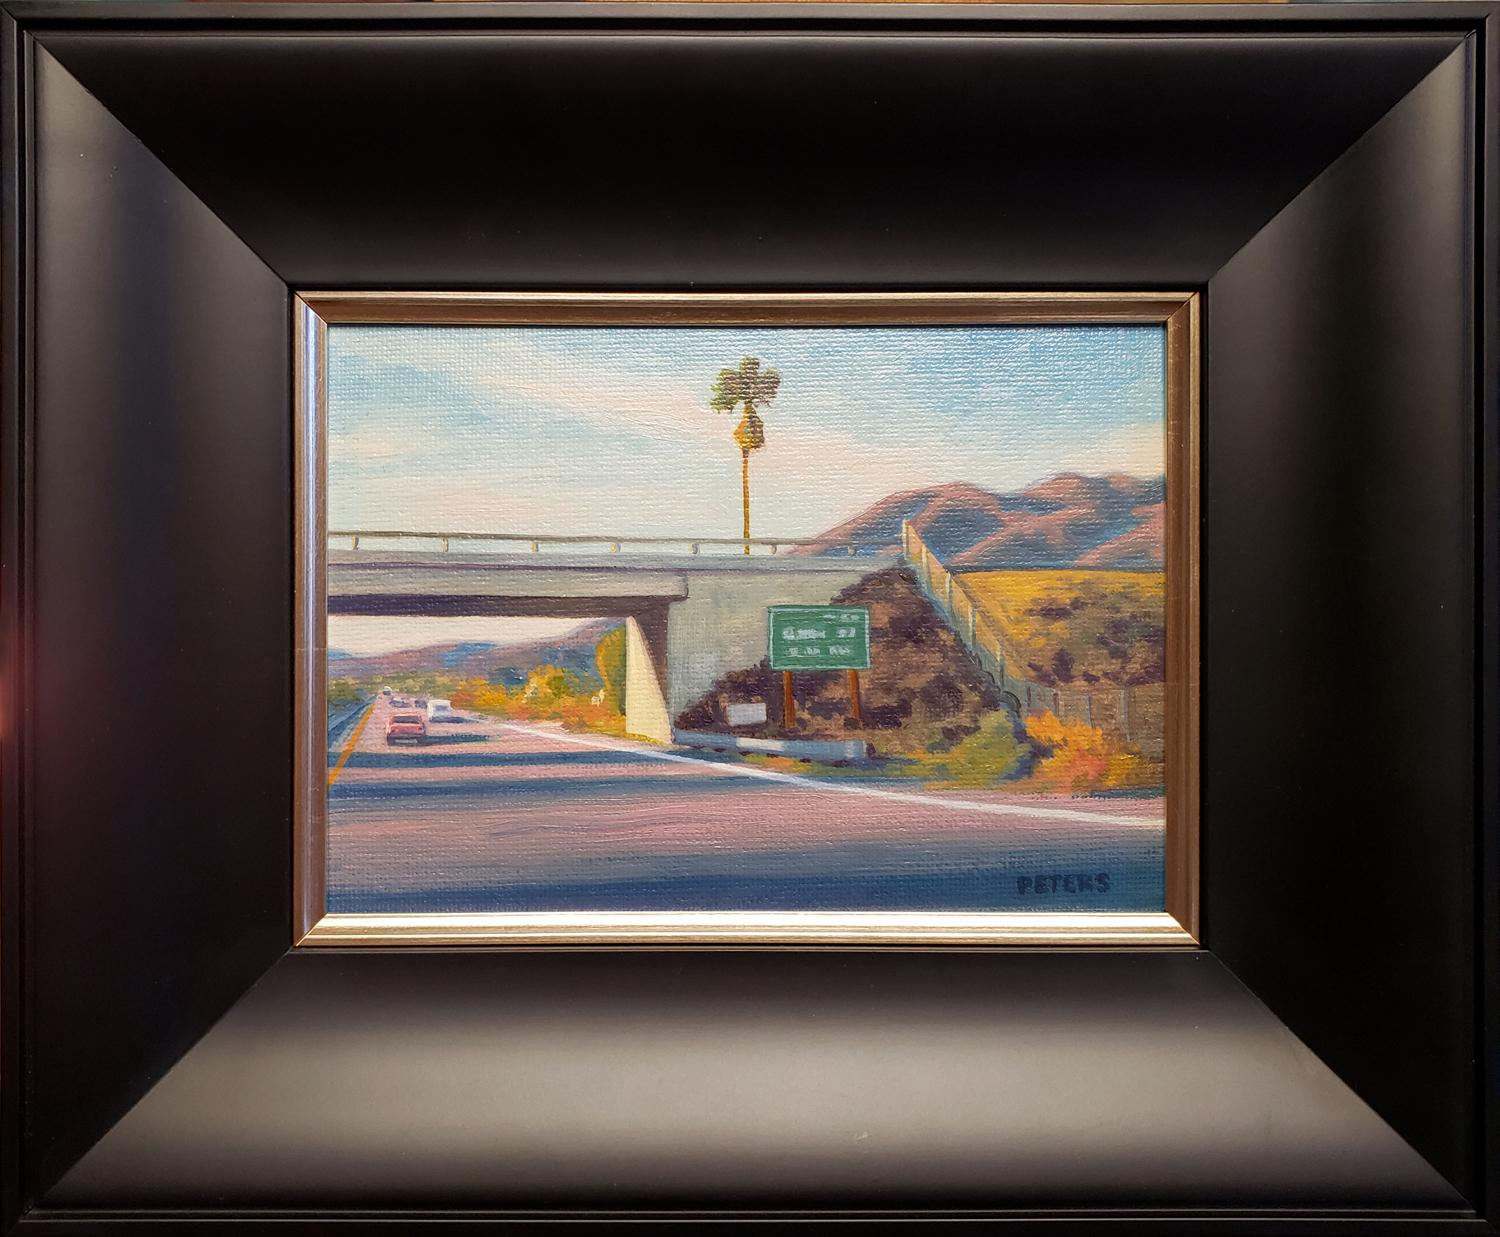 Landscape Painting Tony Peters - Palm ( palmier de Freeway)